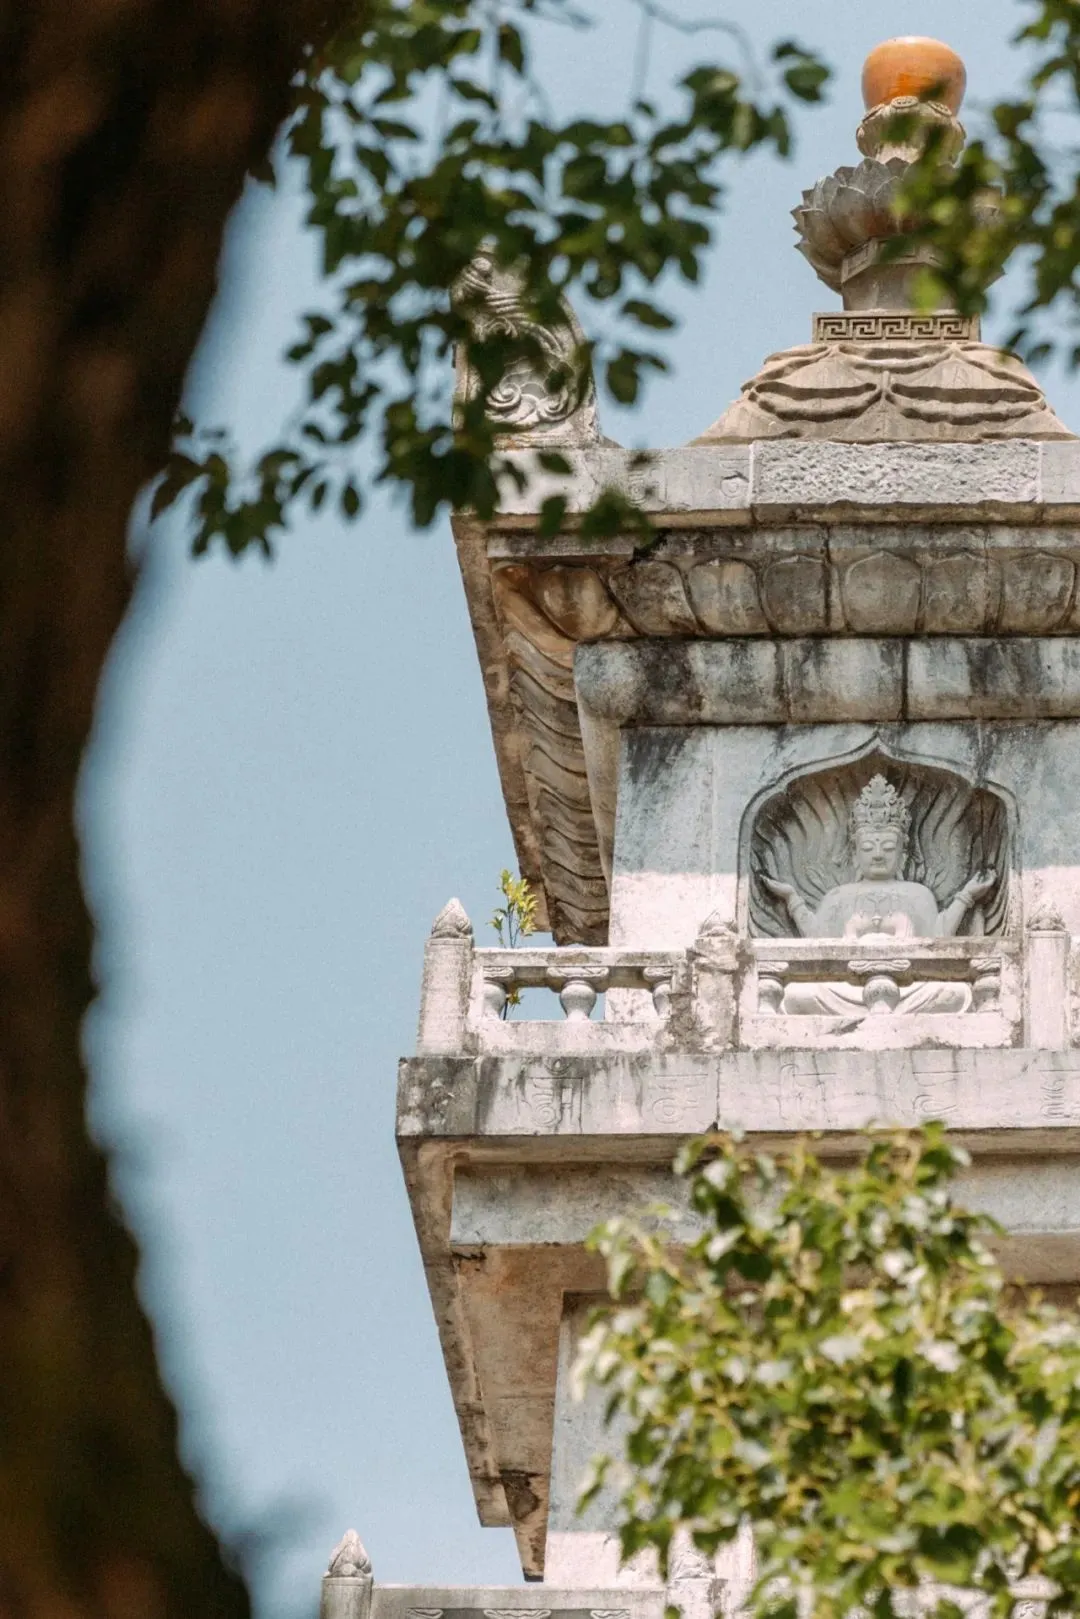 普陀山上的观音菩萨像与古迹。图1-2摄影/李若渔